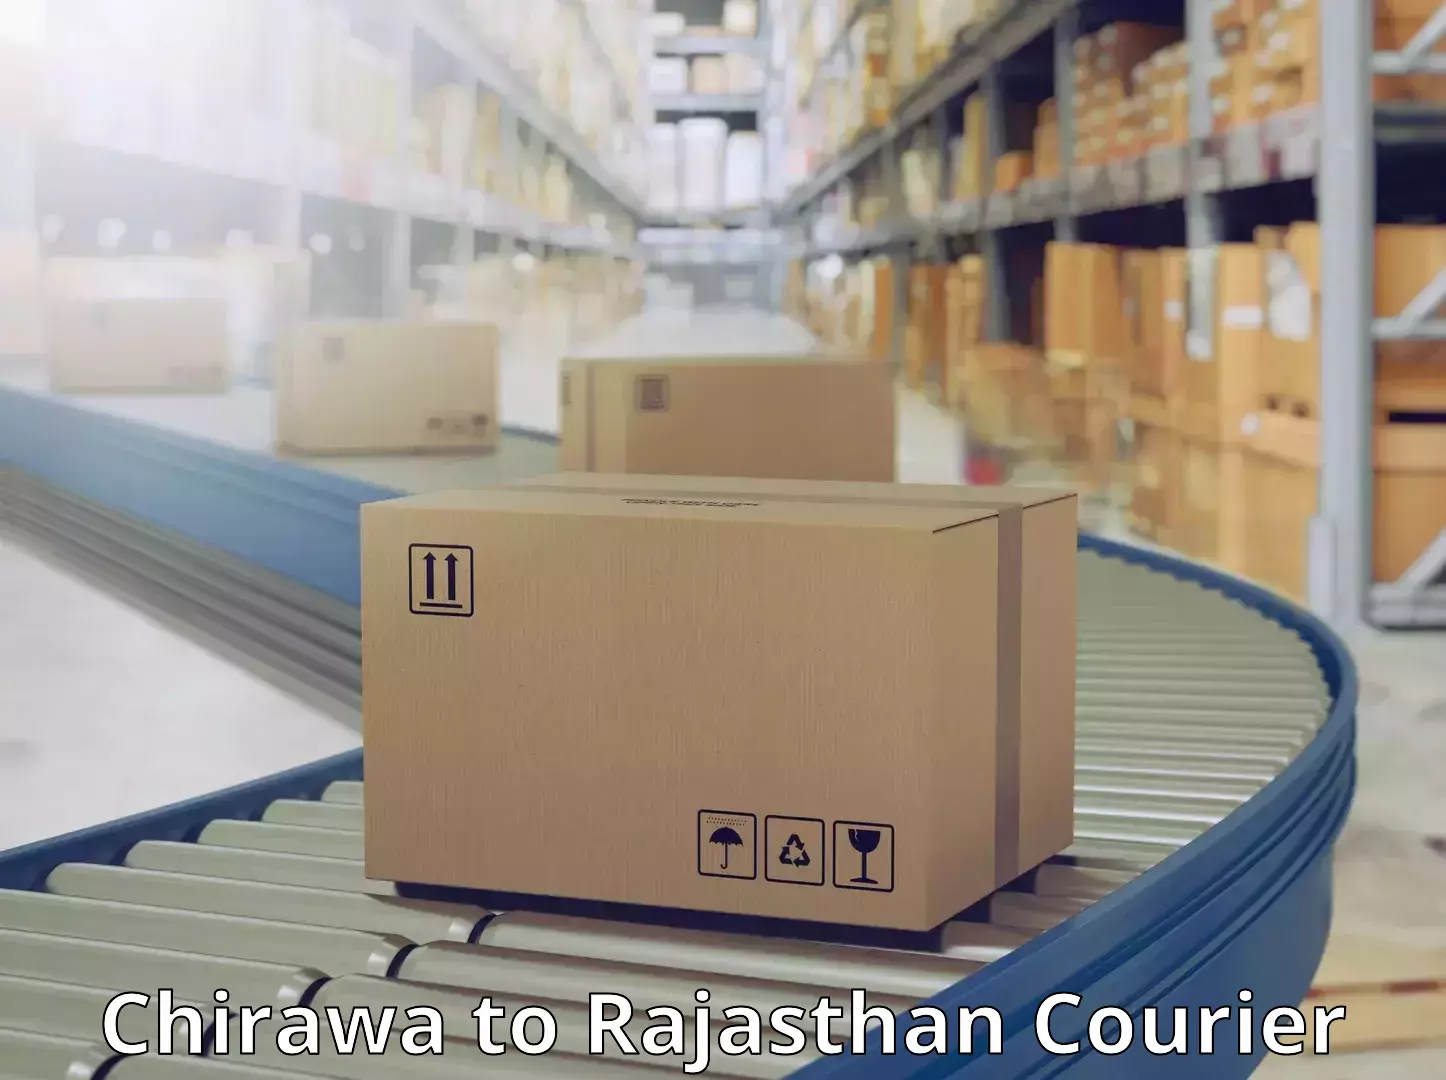 Digital courier platforms Chirawa to Rajasthan